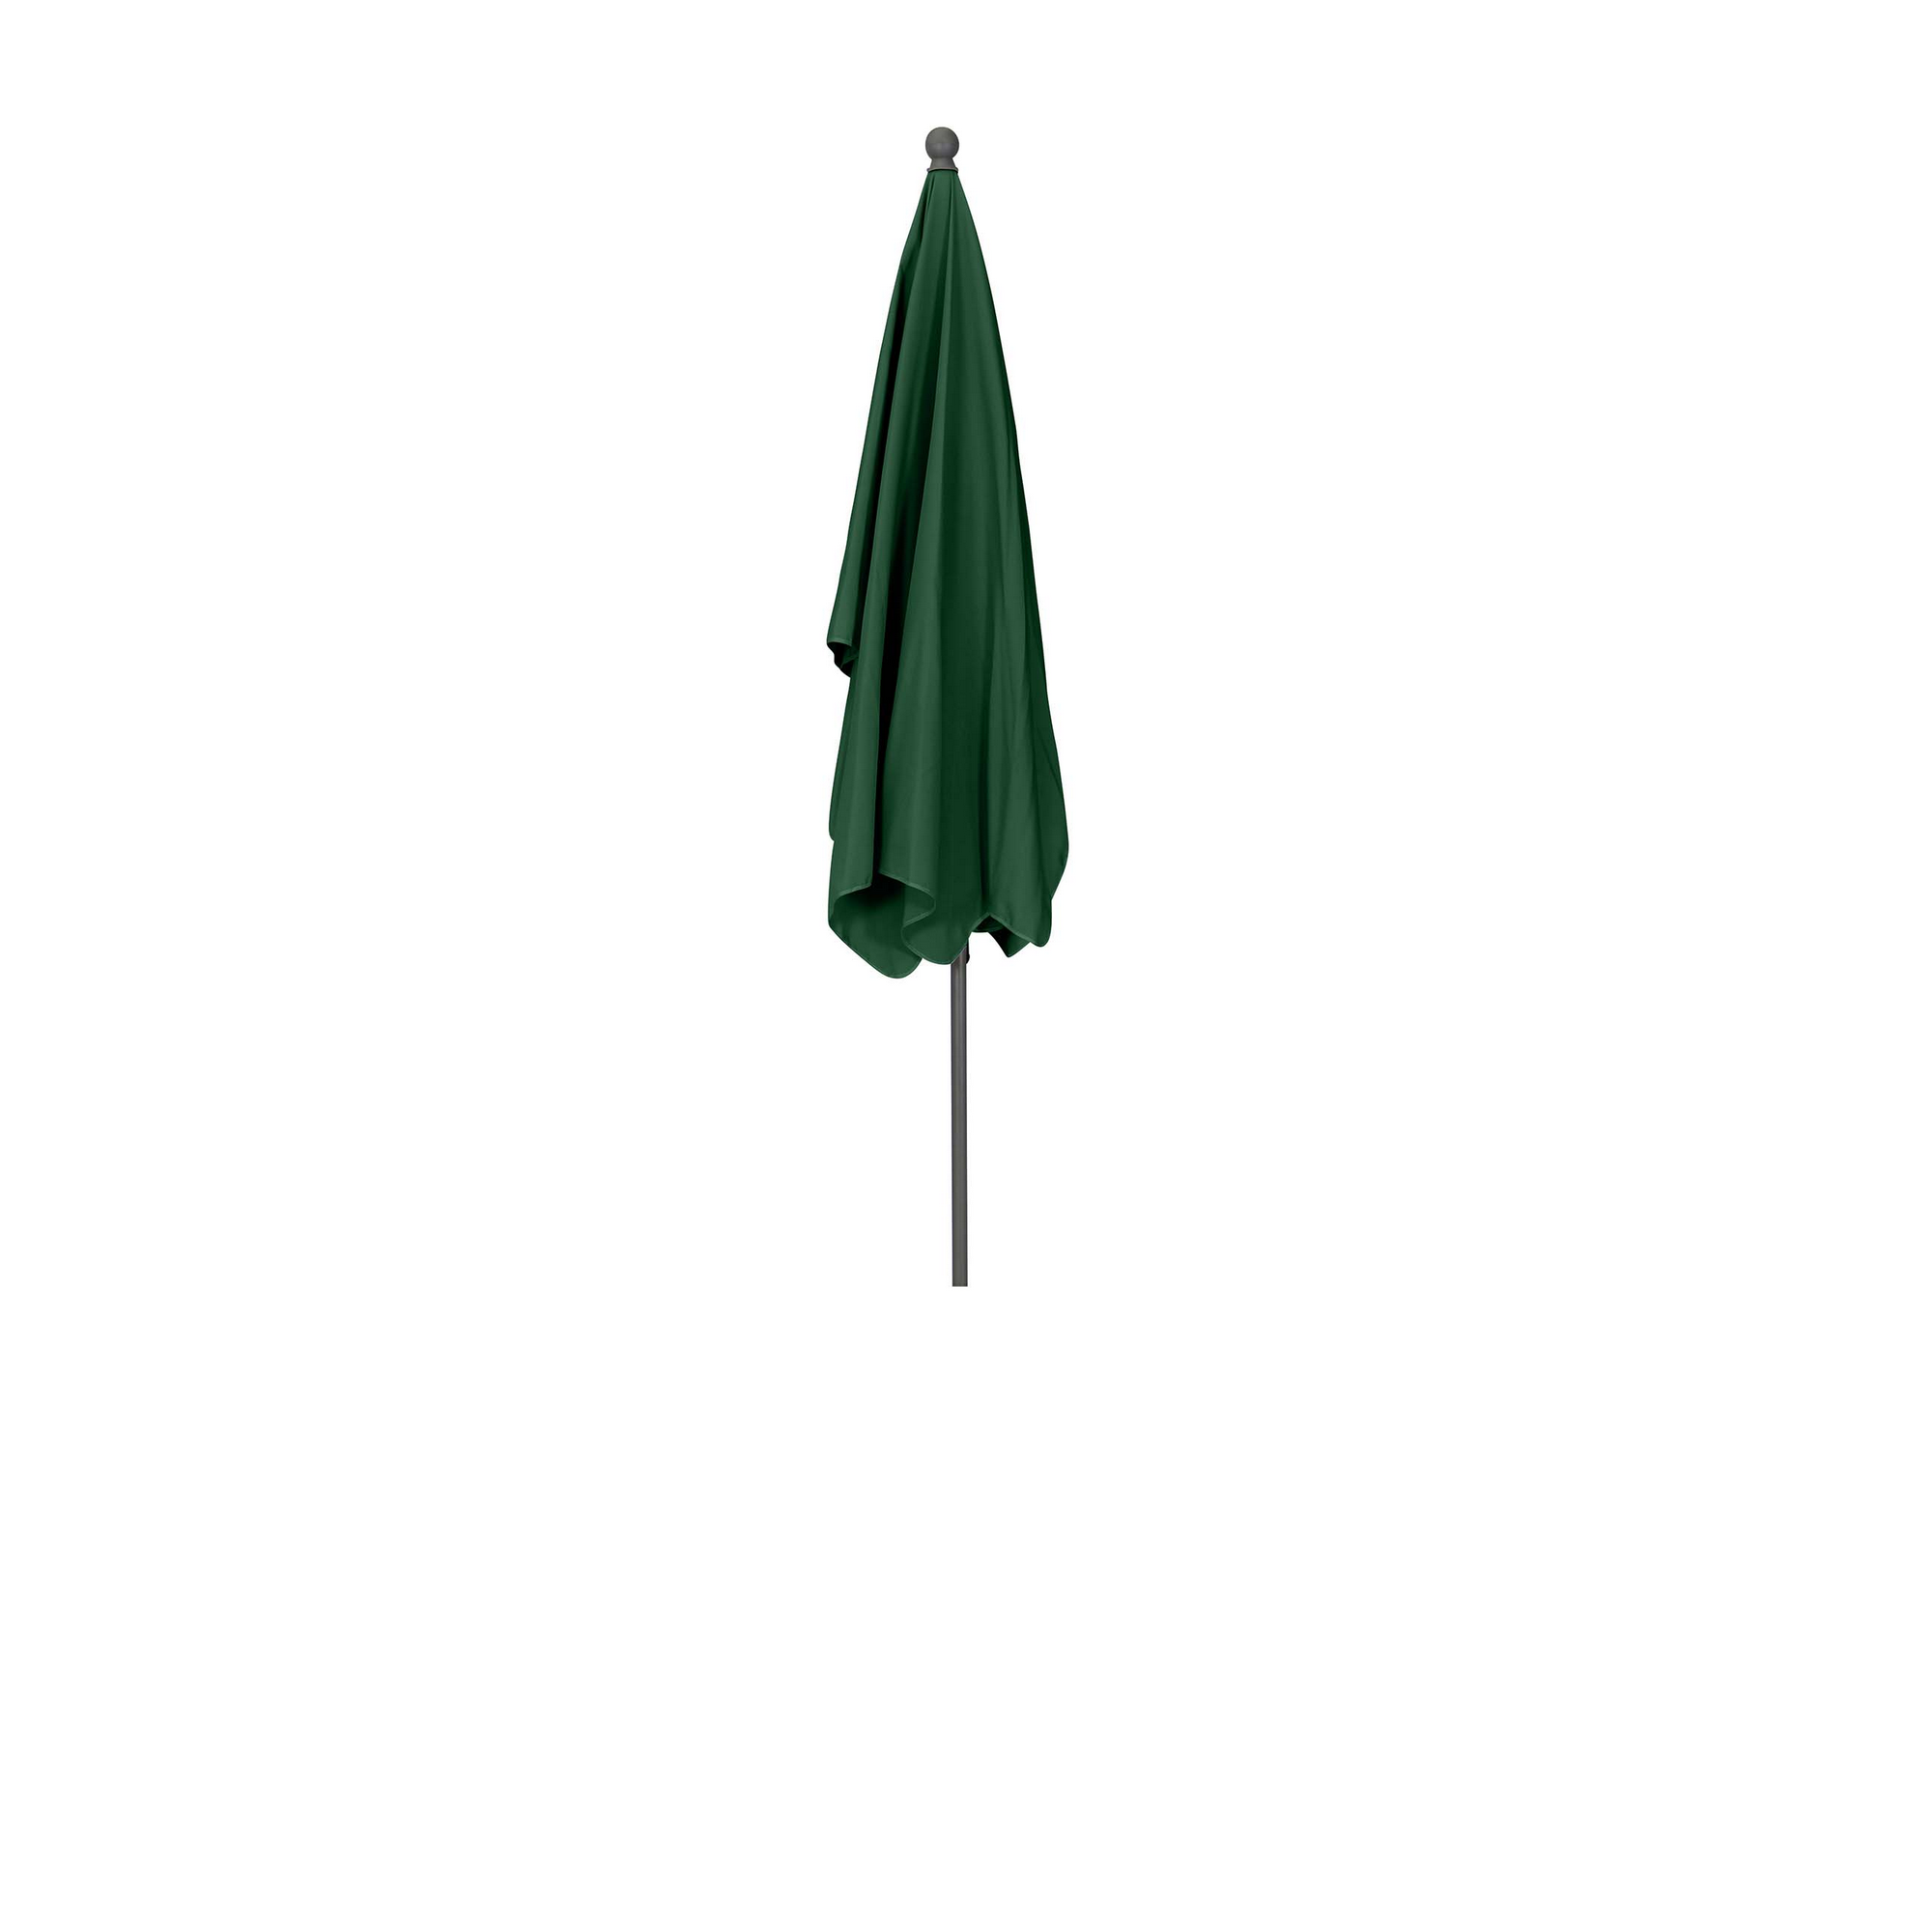 Sonnenschirm 'Tropico' anthrazit/grün 210 x 140 cm + product picture